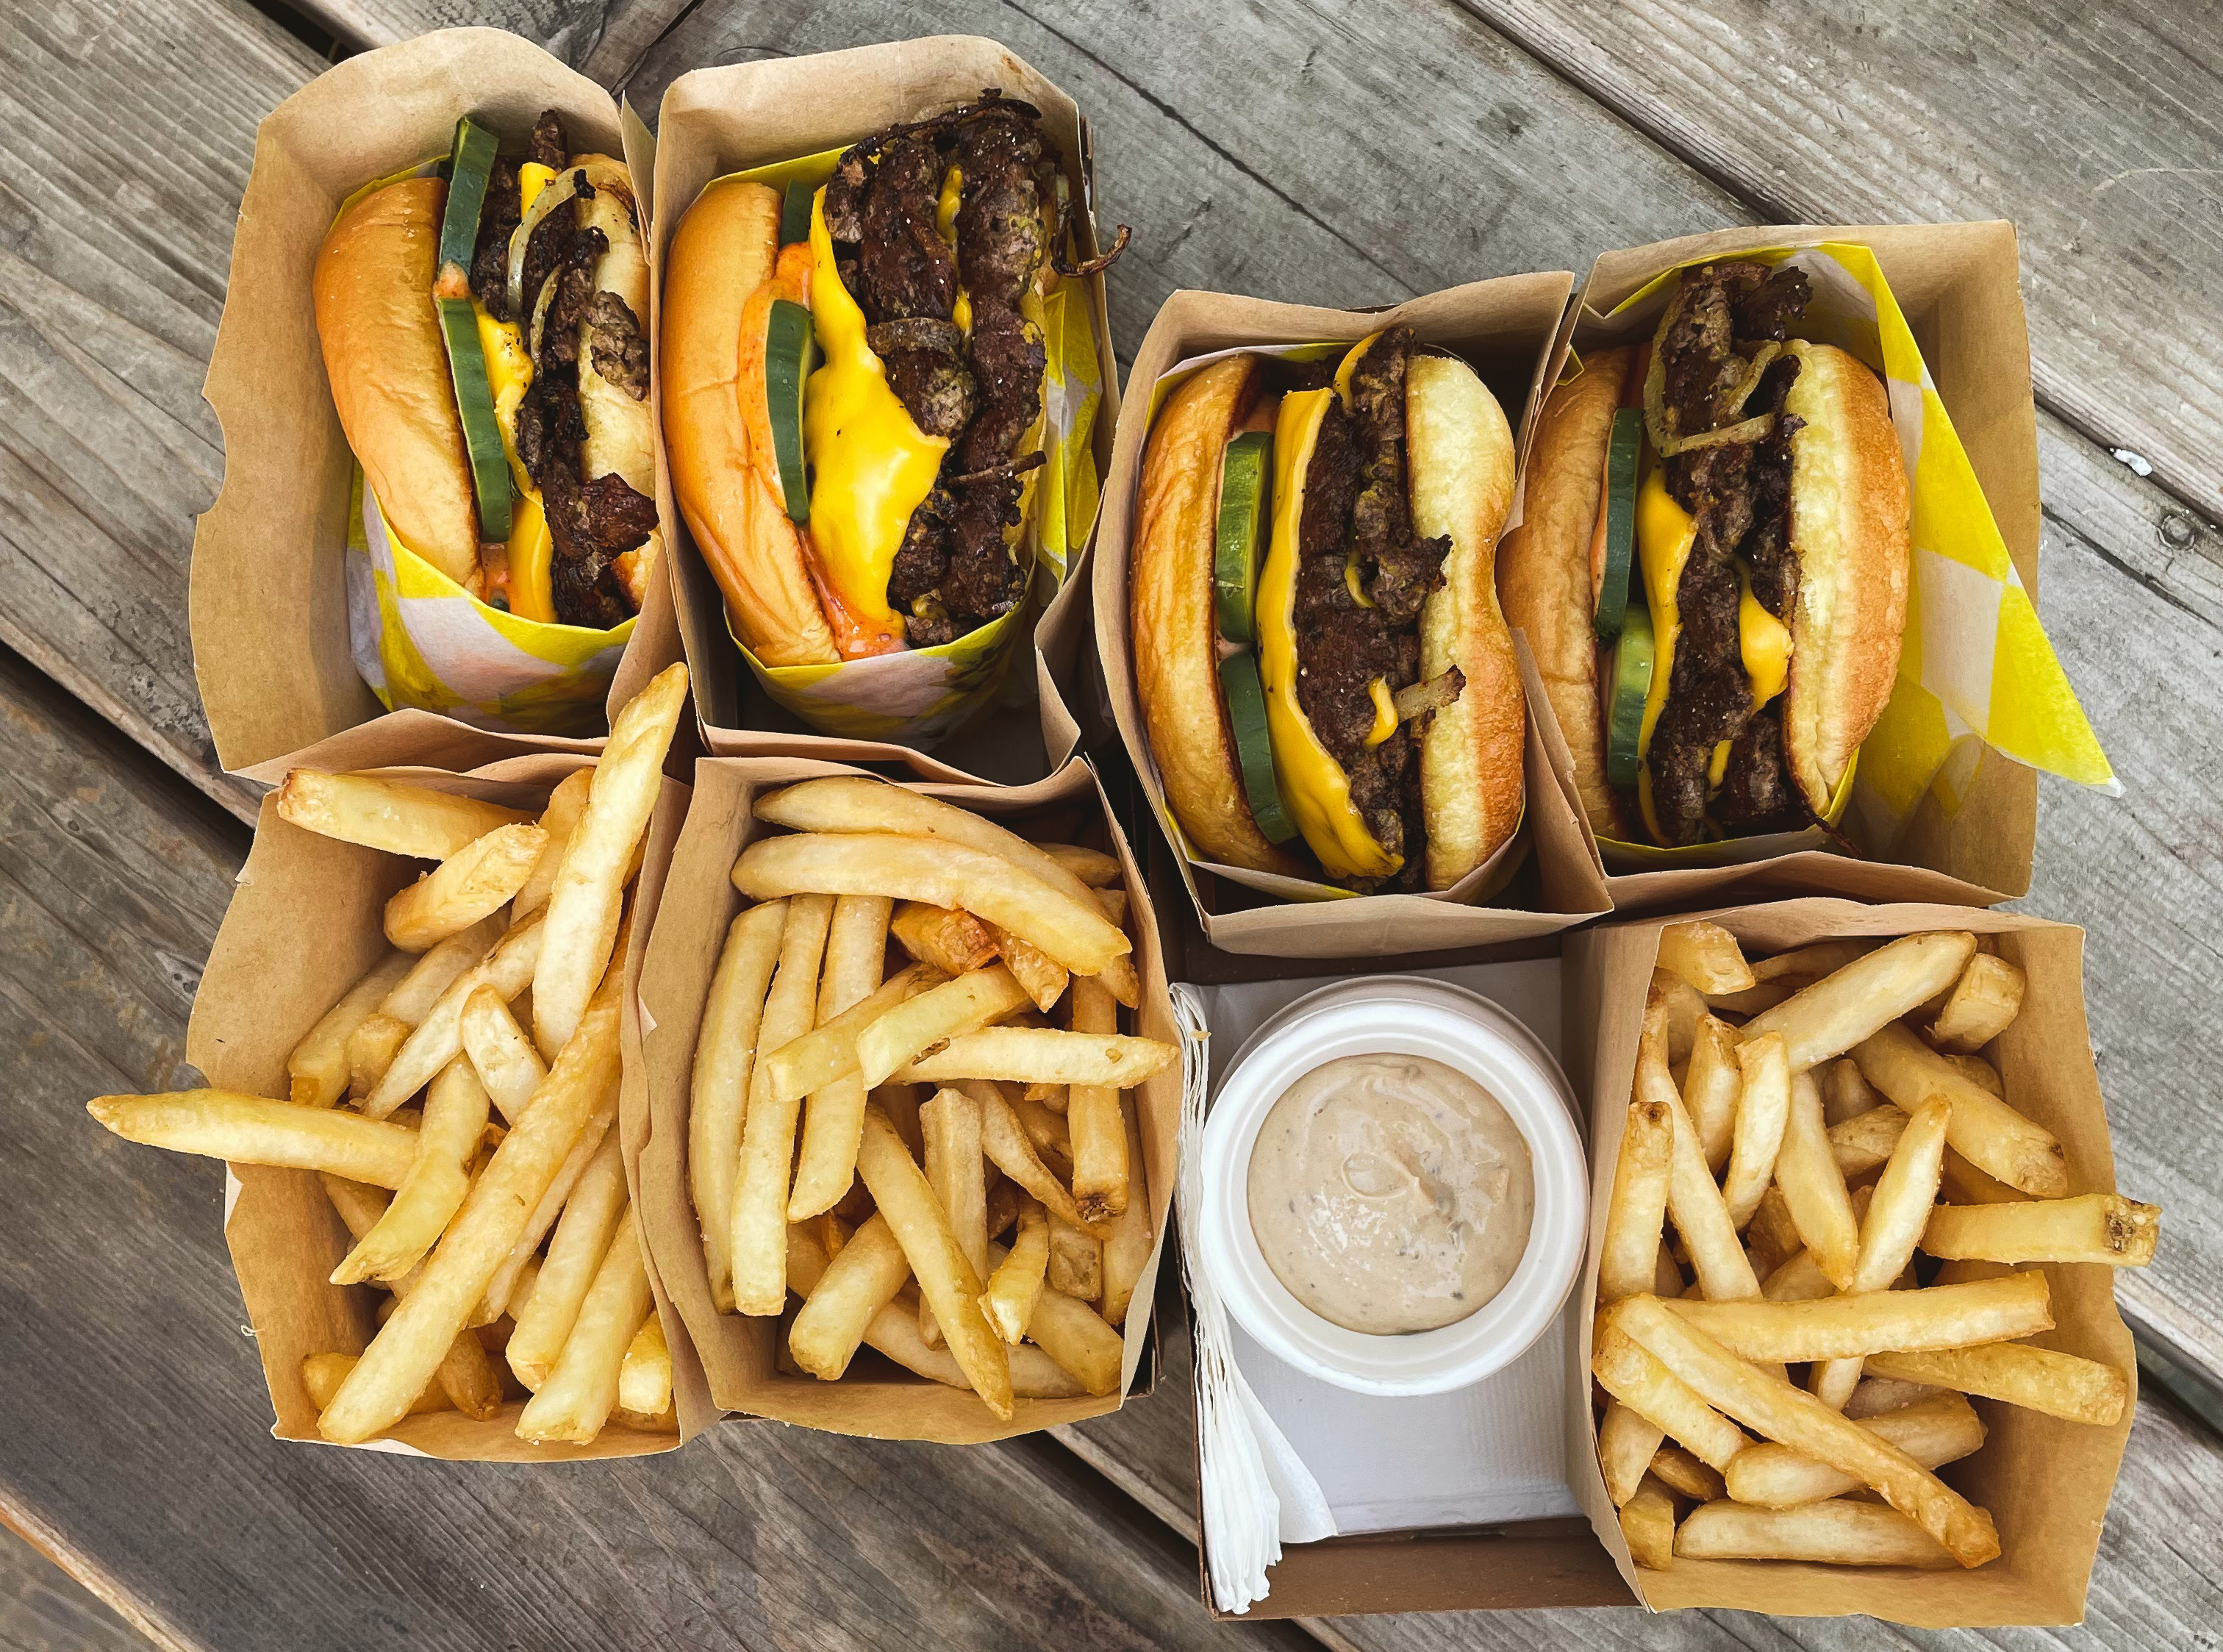 A burger and fries from XO Burger in Santa Barbara